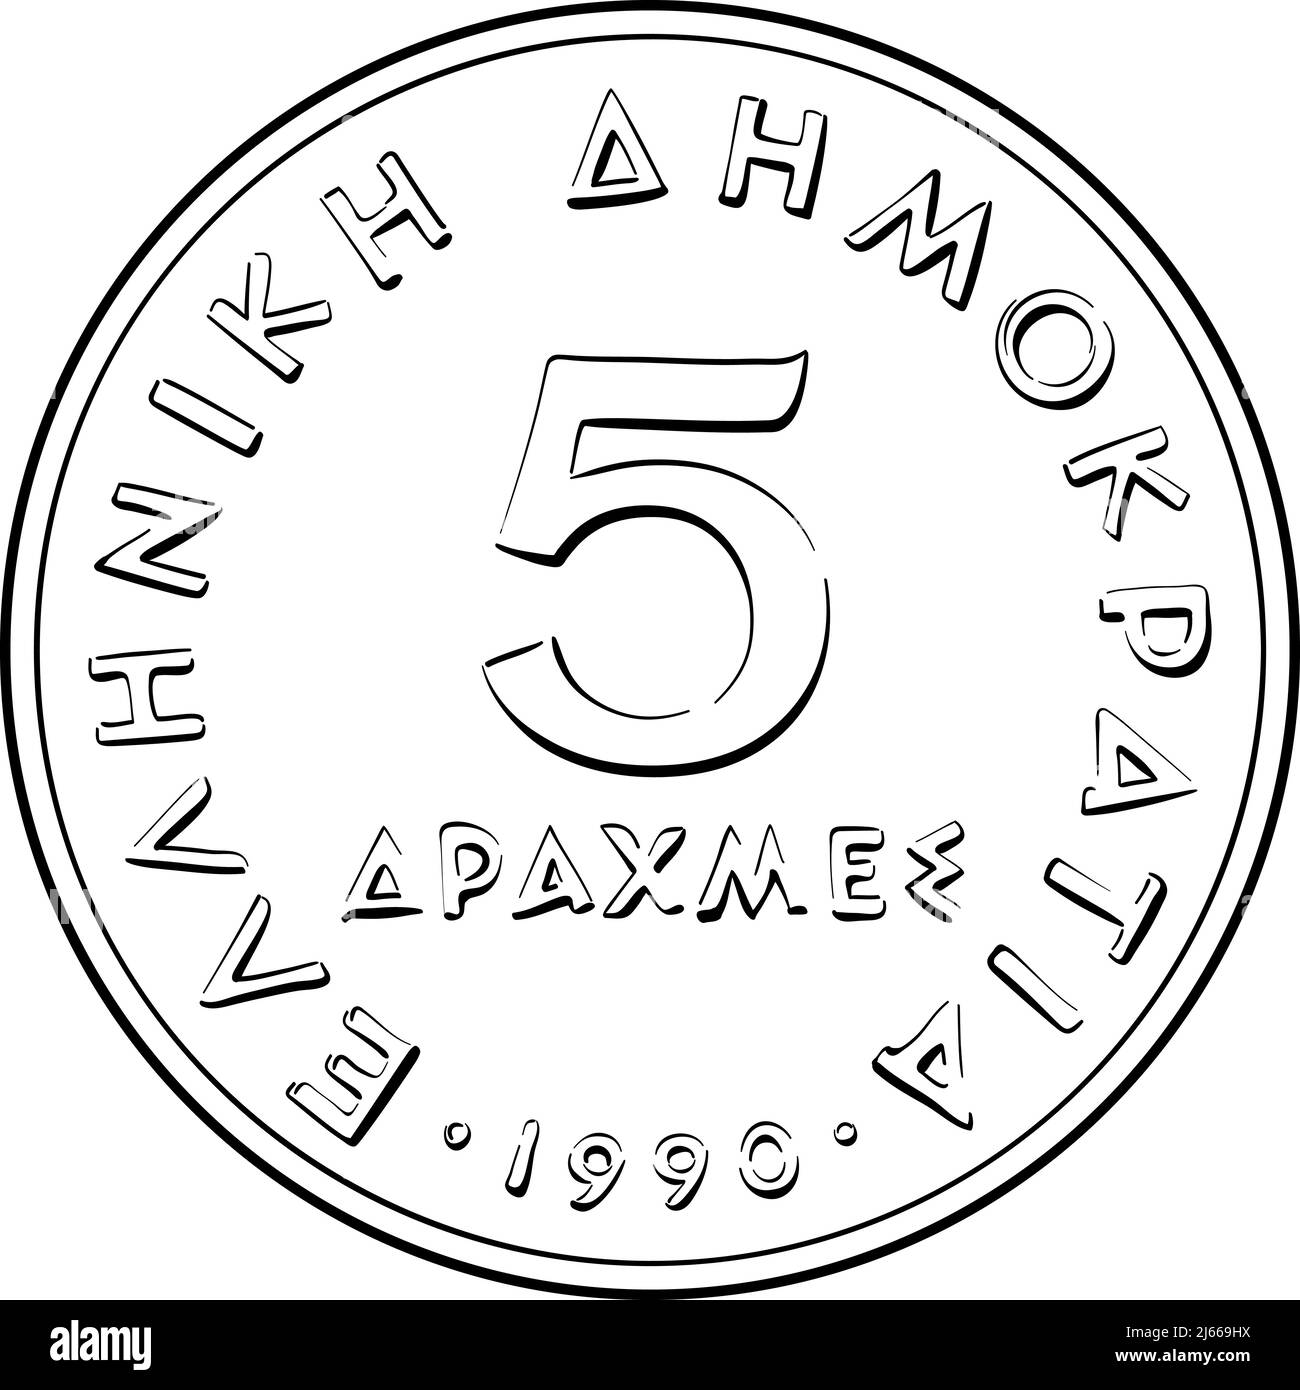 Schwarz-Weiß-Vektor-Rückseite des griechischen Geldes, 5 Drachmen-Münze mit Aristoteles-Profil Stock Vektor